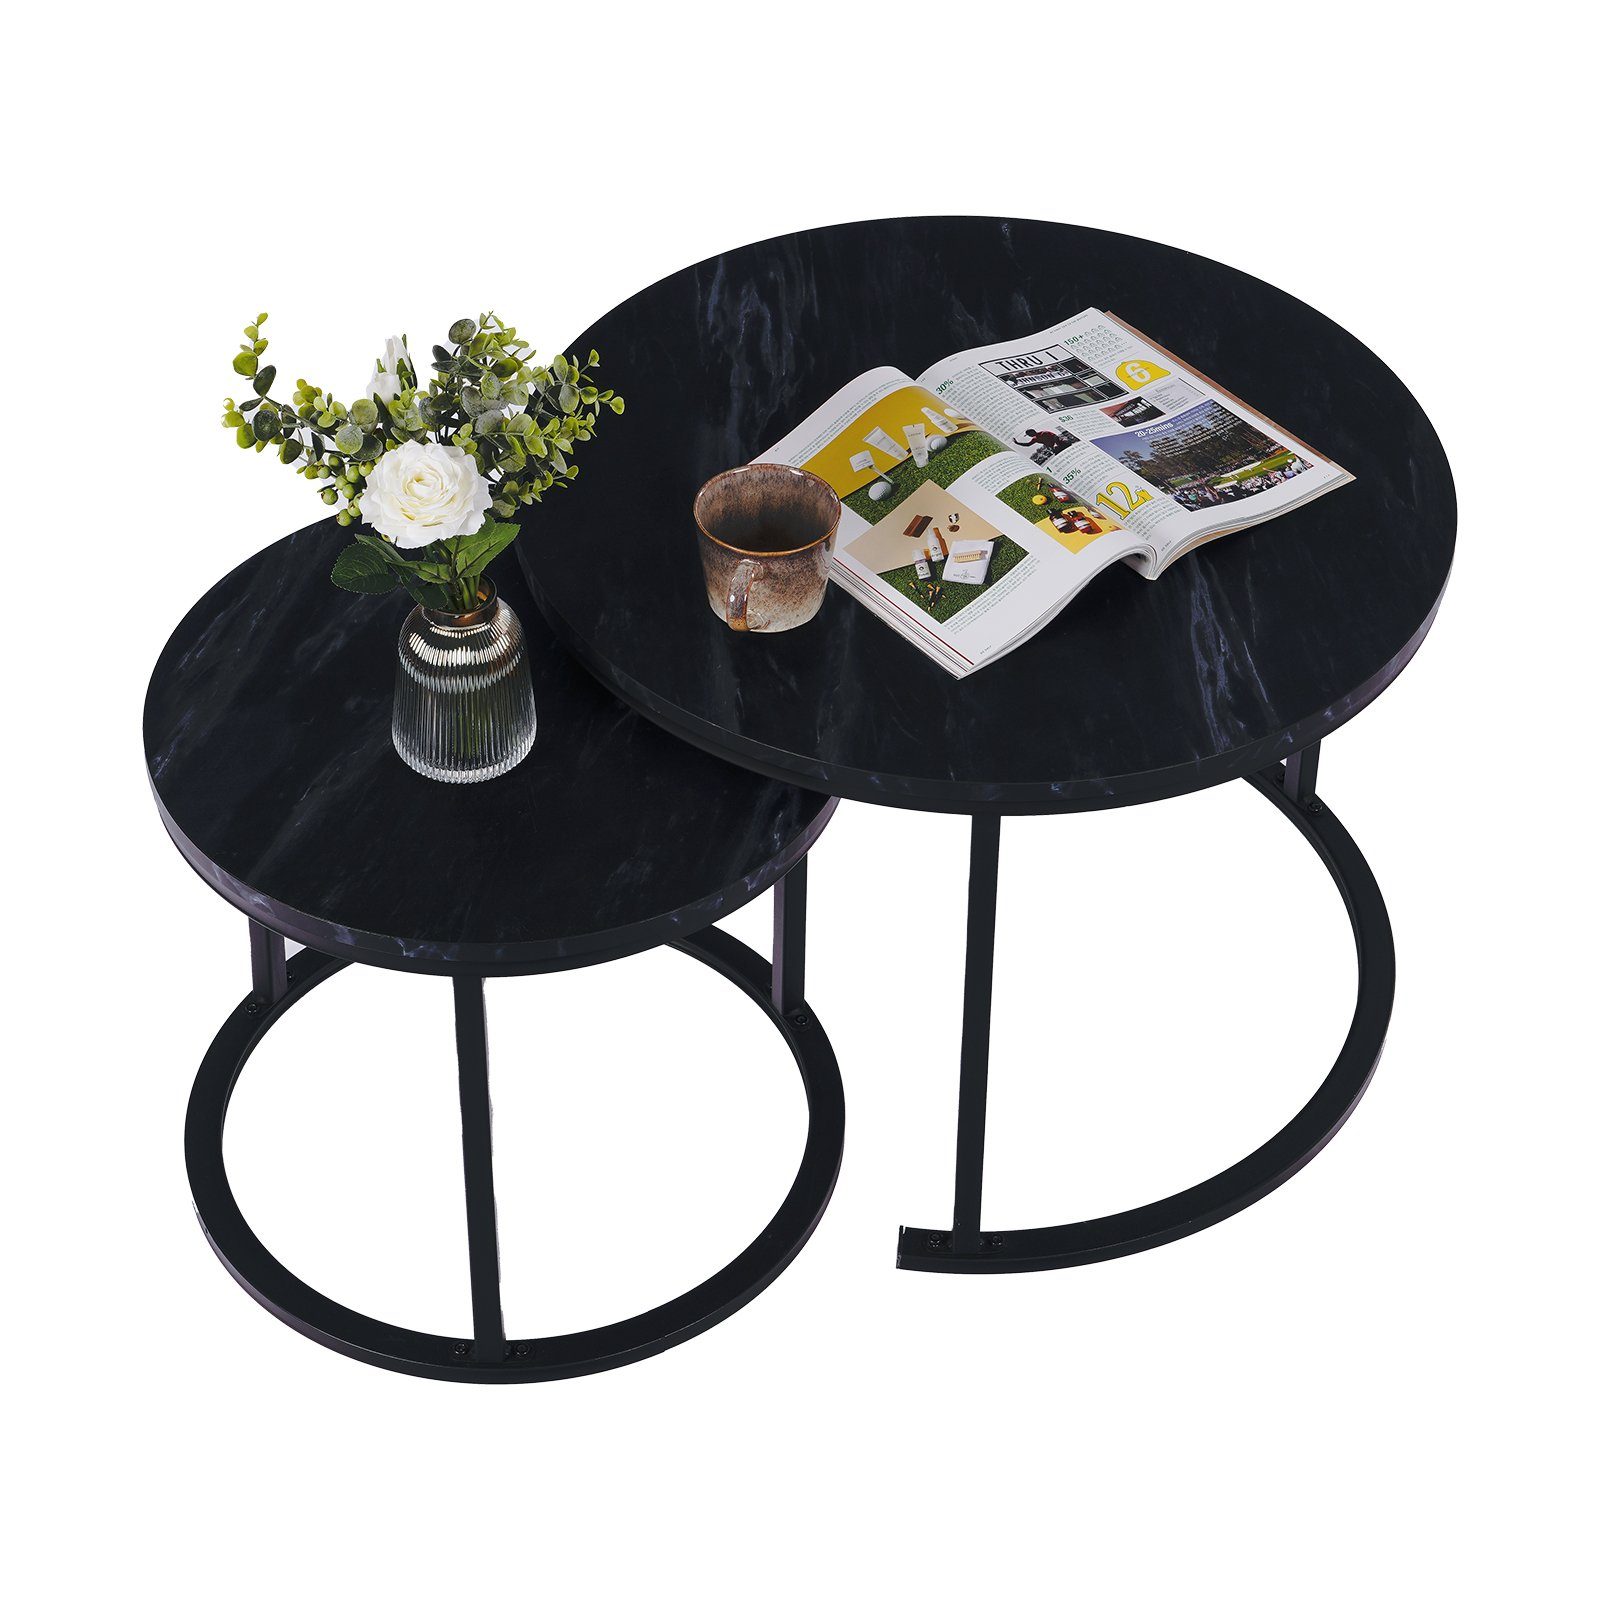 Modern Großer Tisch: 70x45cm, SWISSBRAND Schwarz, Kleiner Couchtisch Beistelltisch, (2er-Set), 50x40cm 2er Tisch: